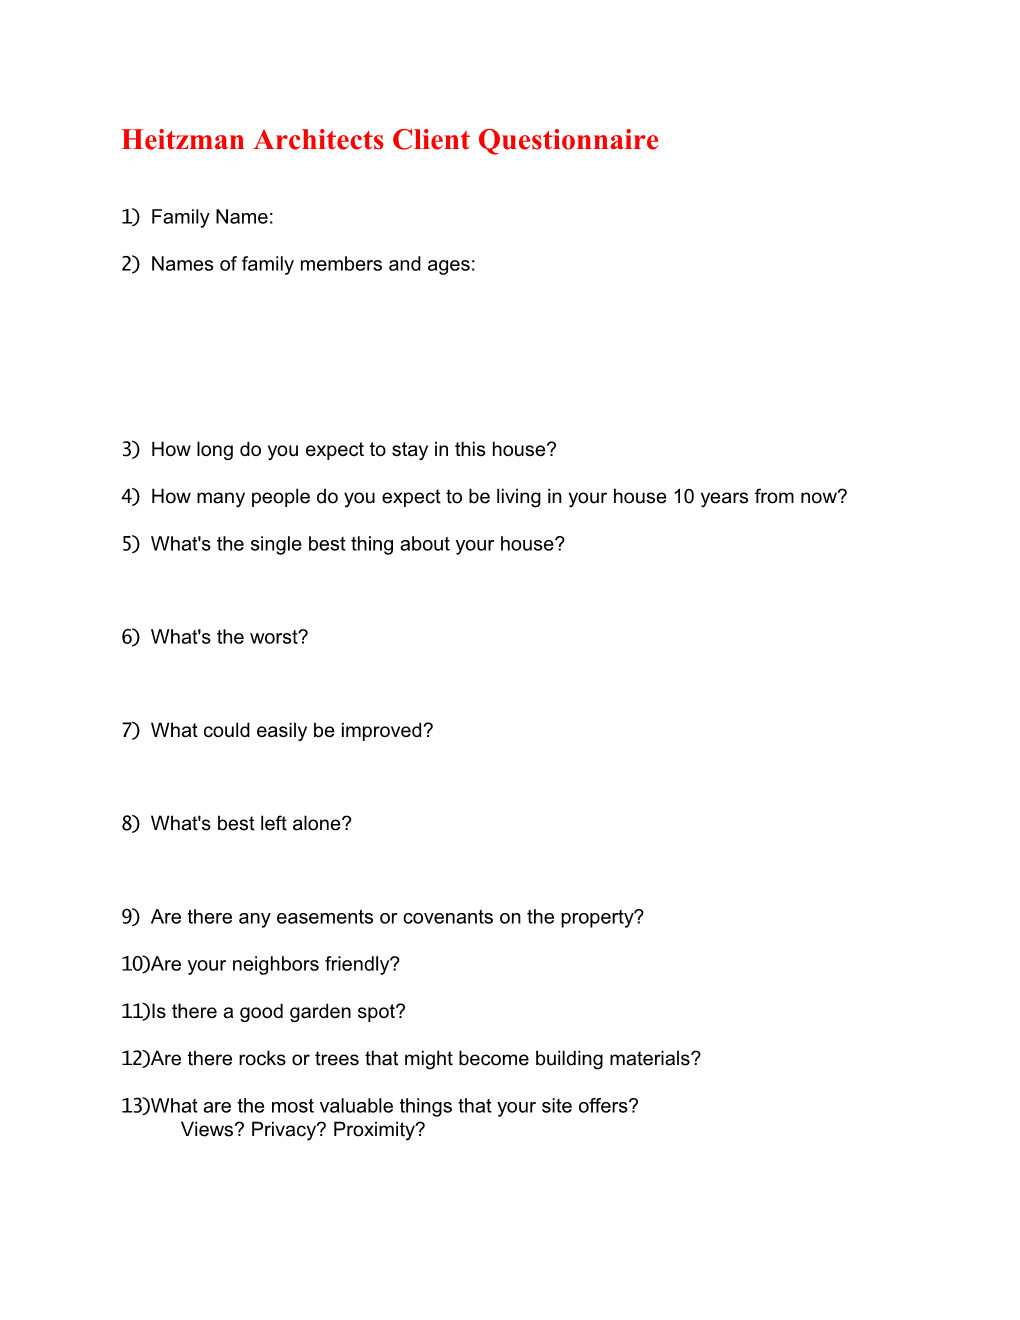 Heitzman Architects Client Questionnaire